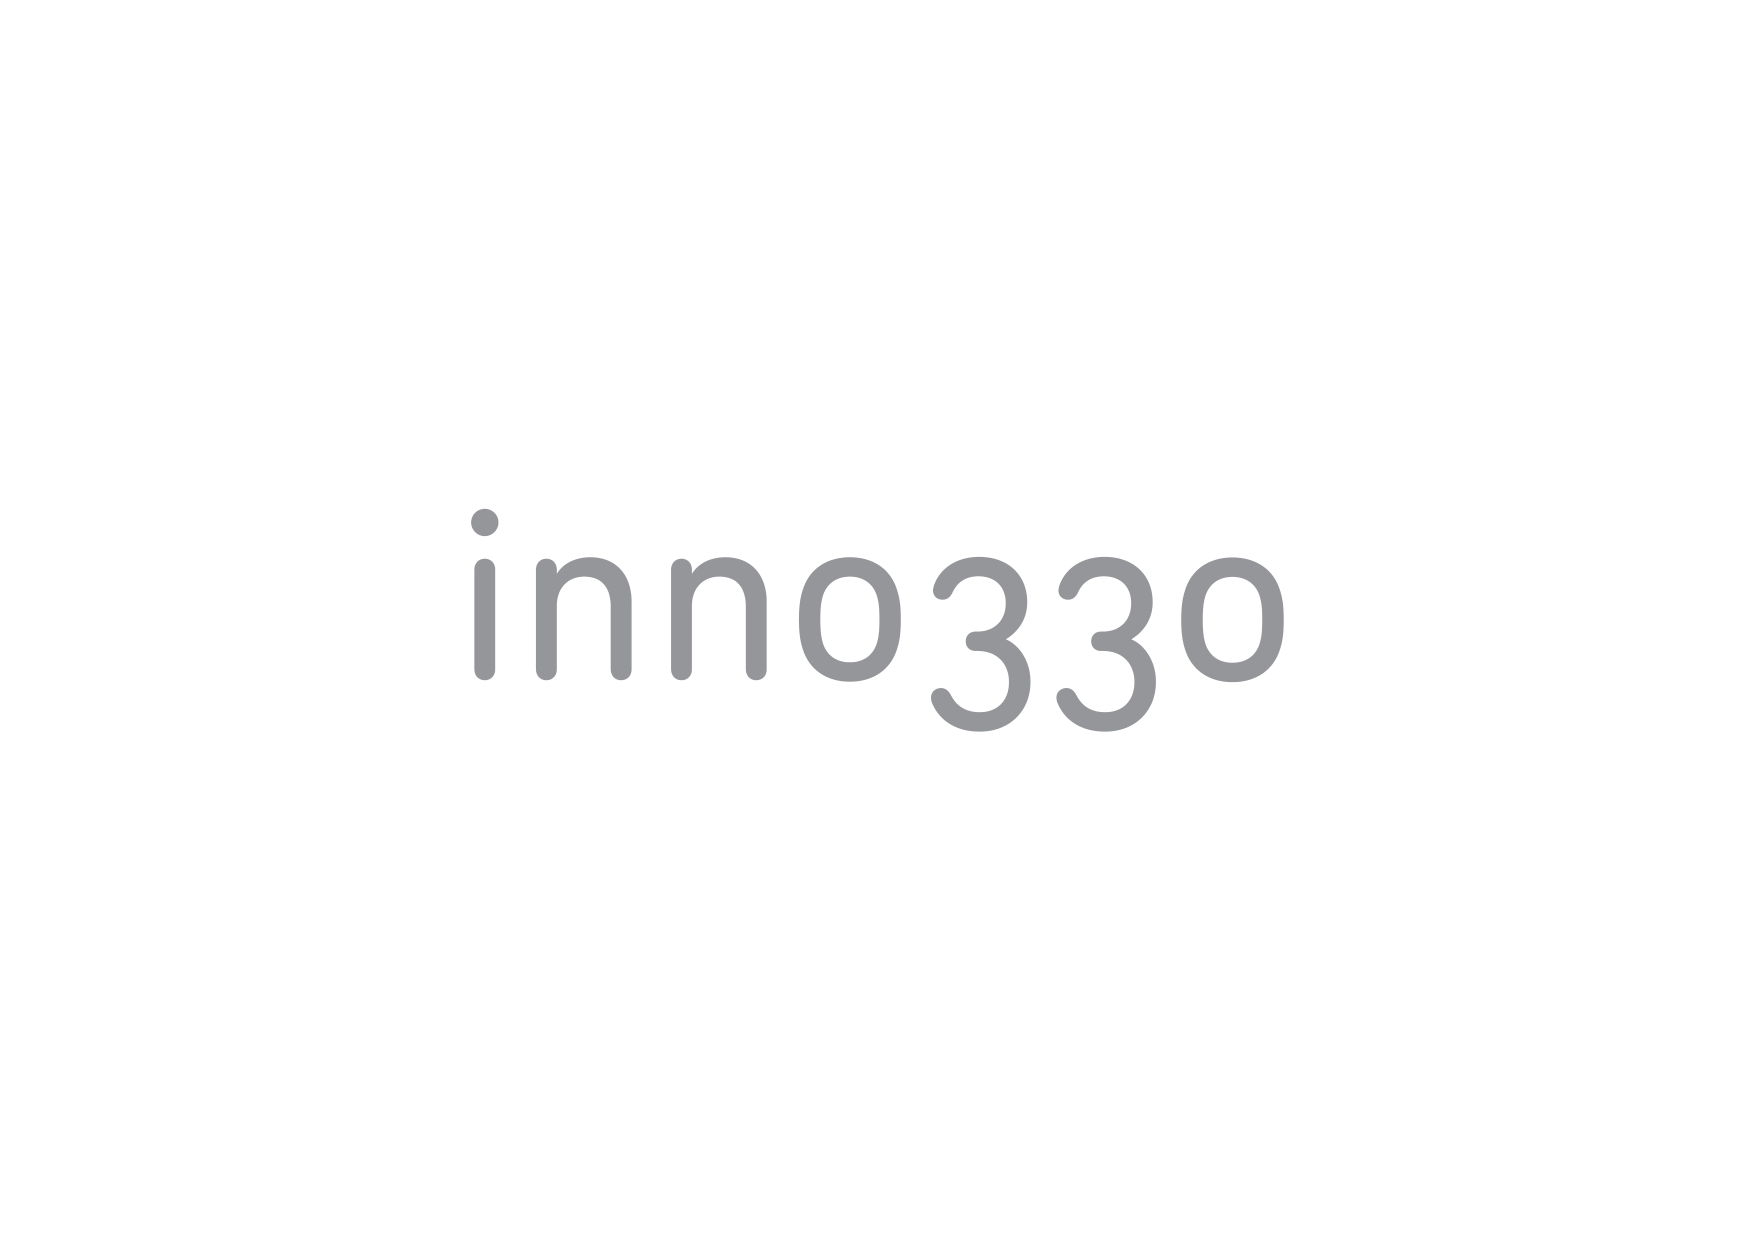 inno330 